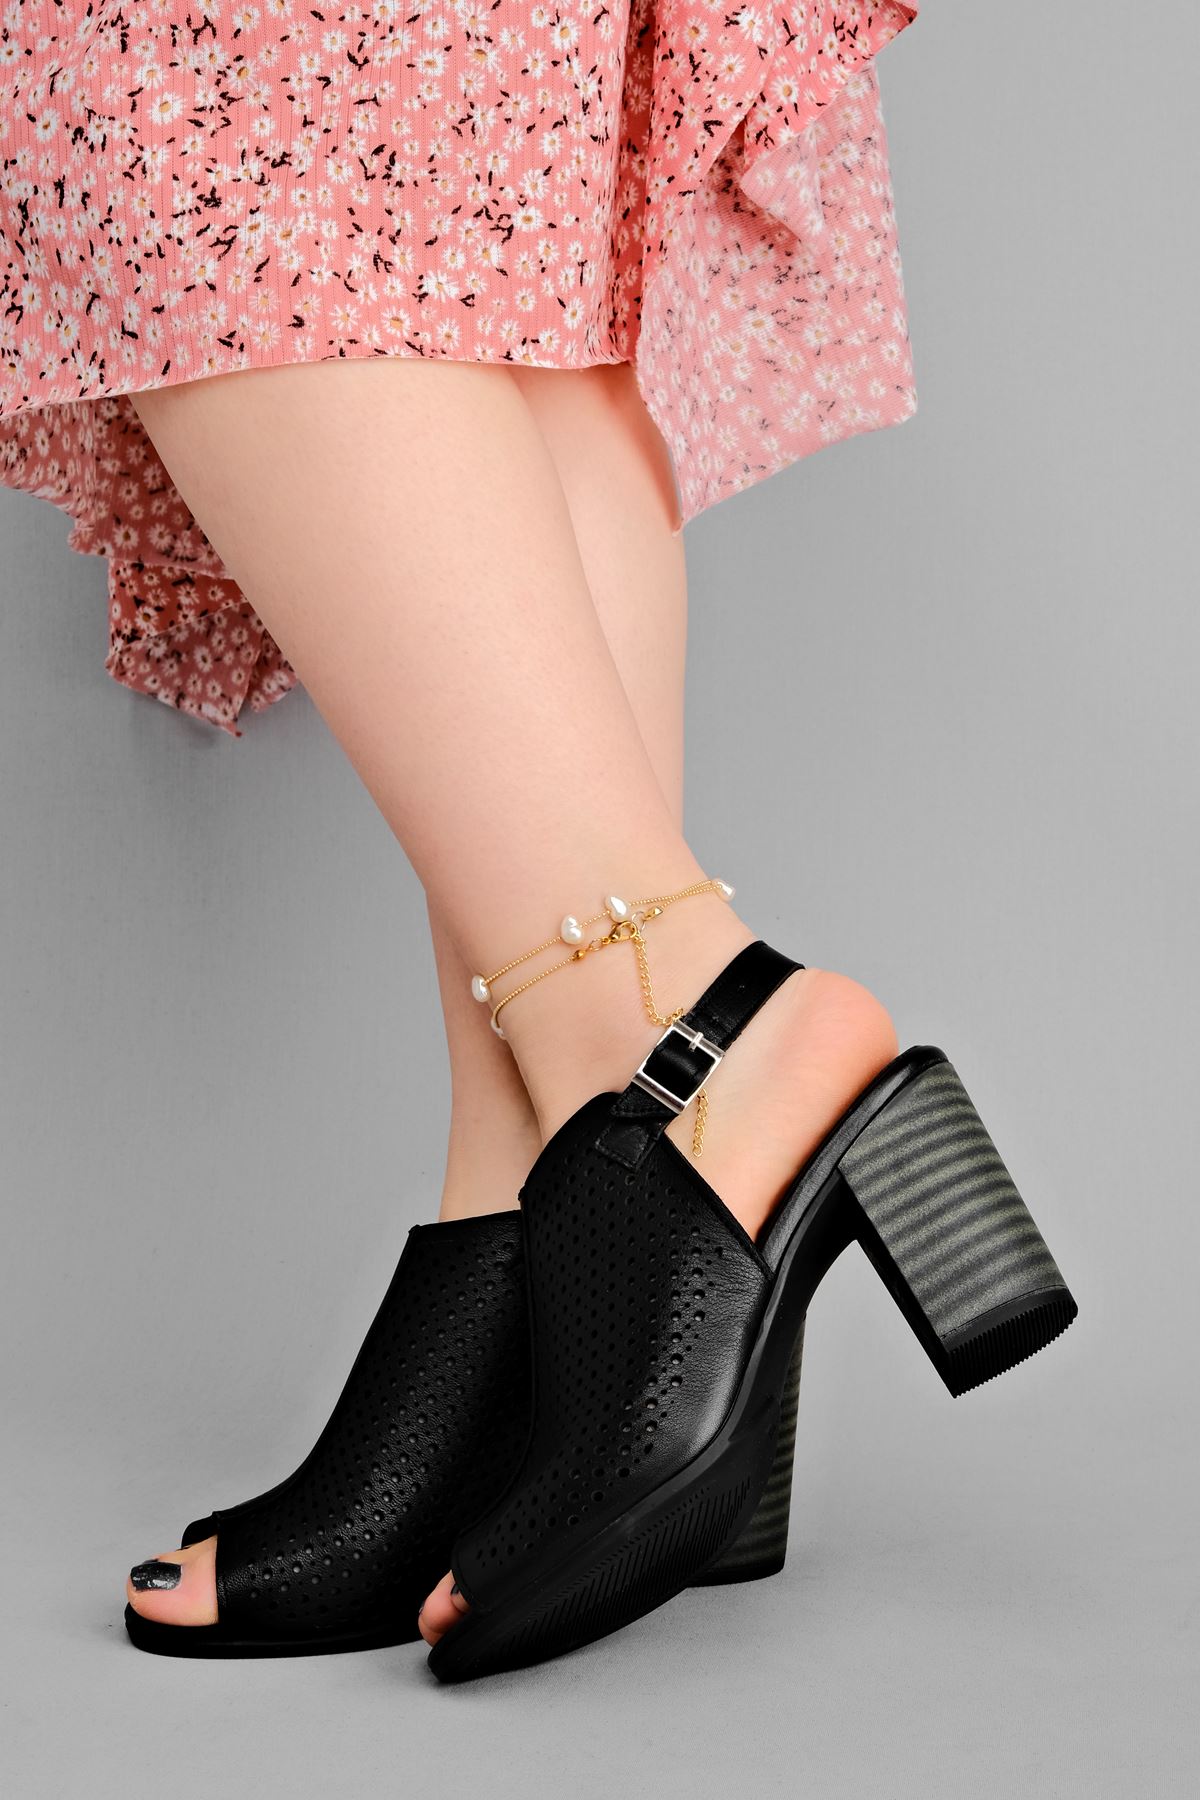 Vesta Kadın Hakiki Deri Topuklu Ayakkabı Üstü Delikli-siyah